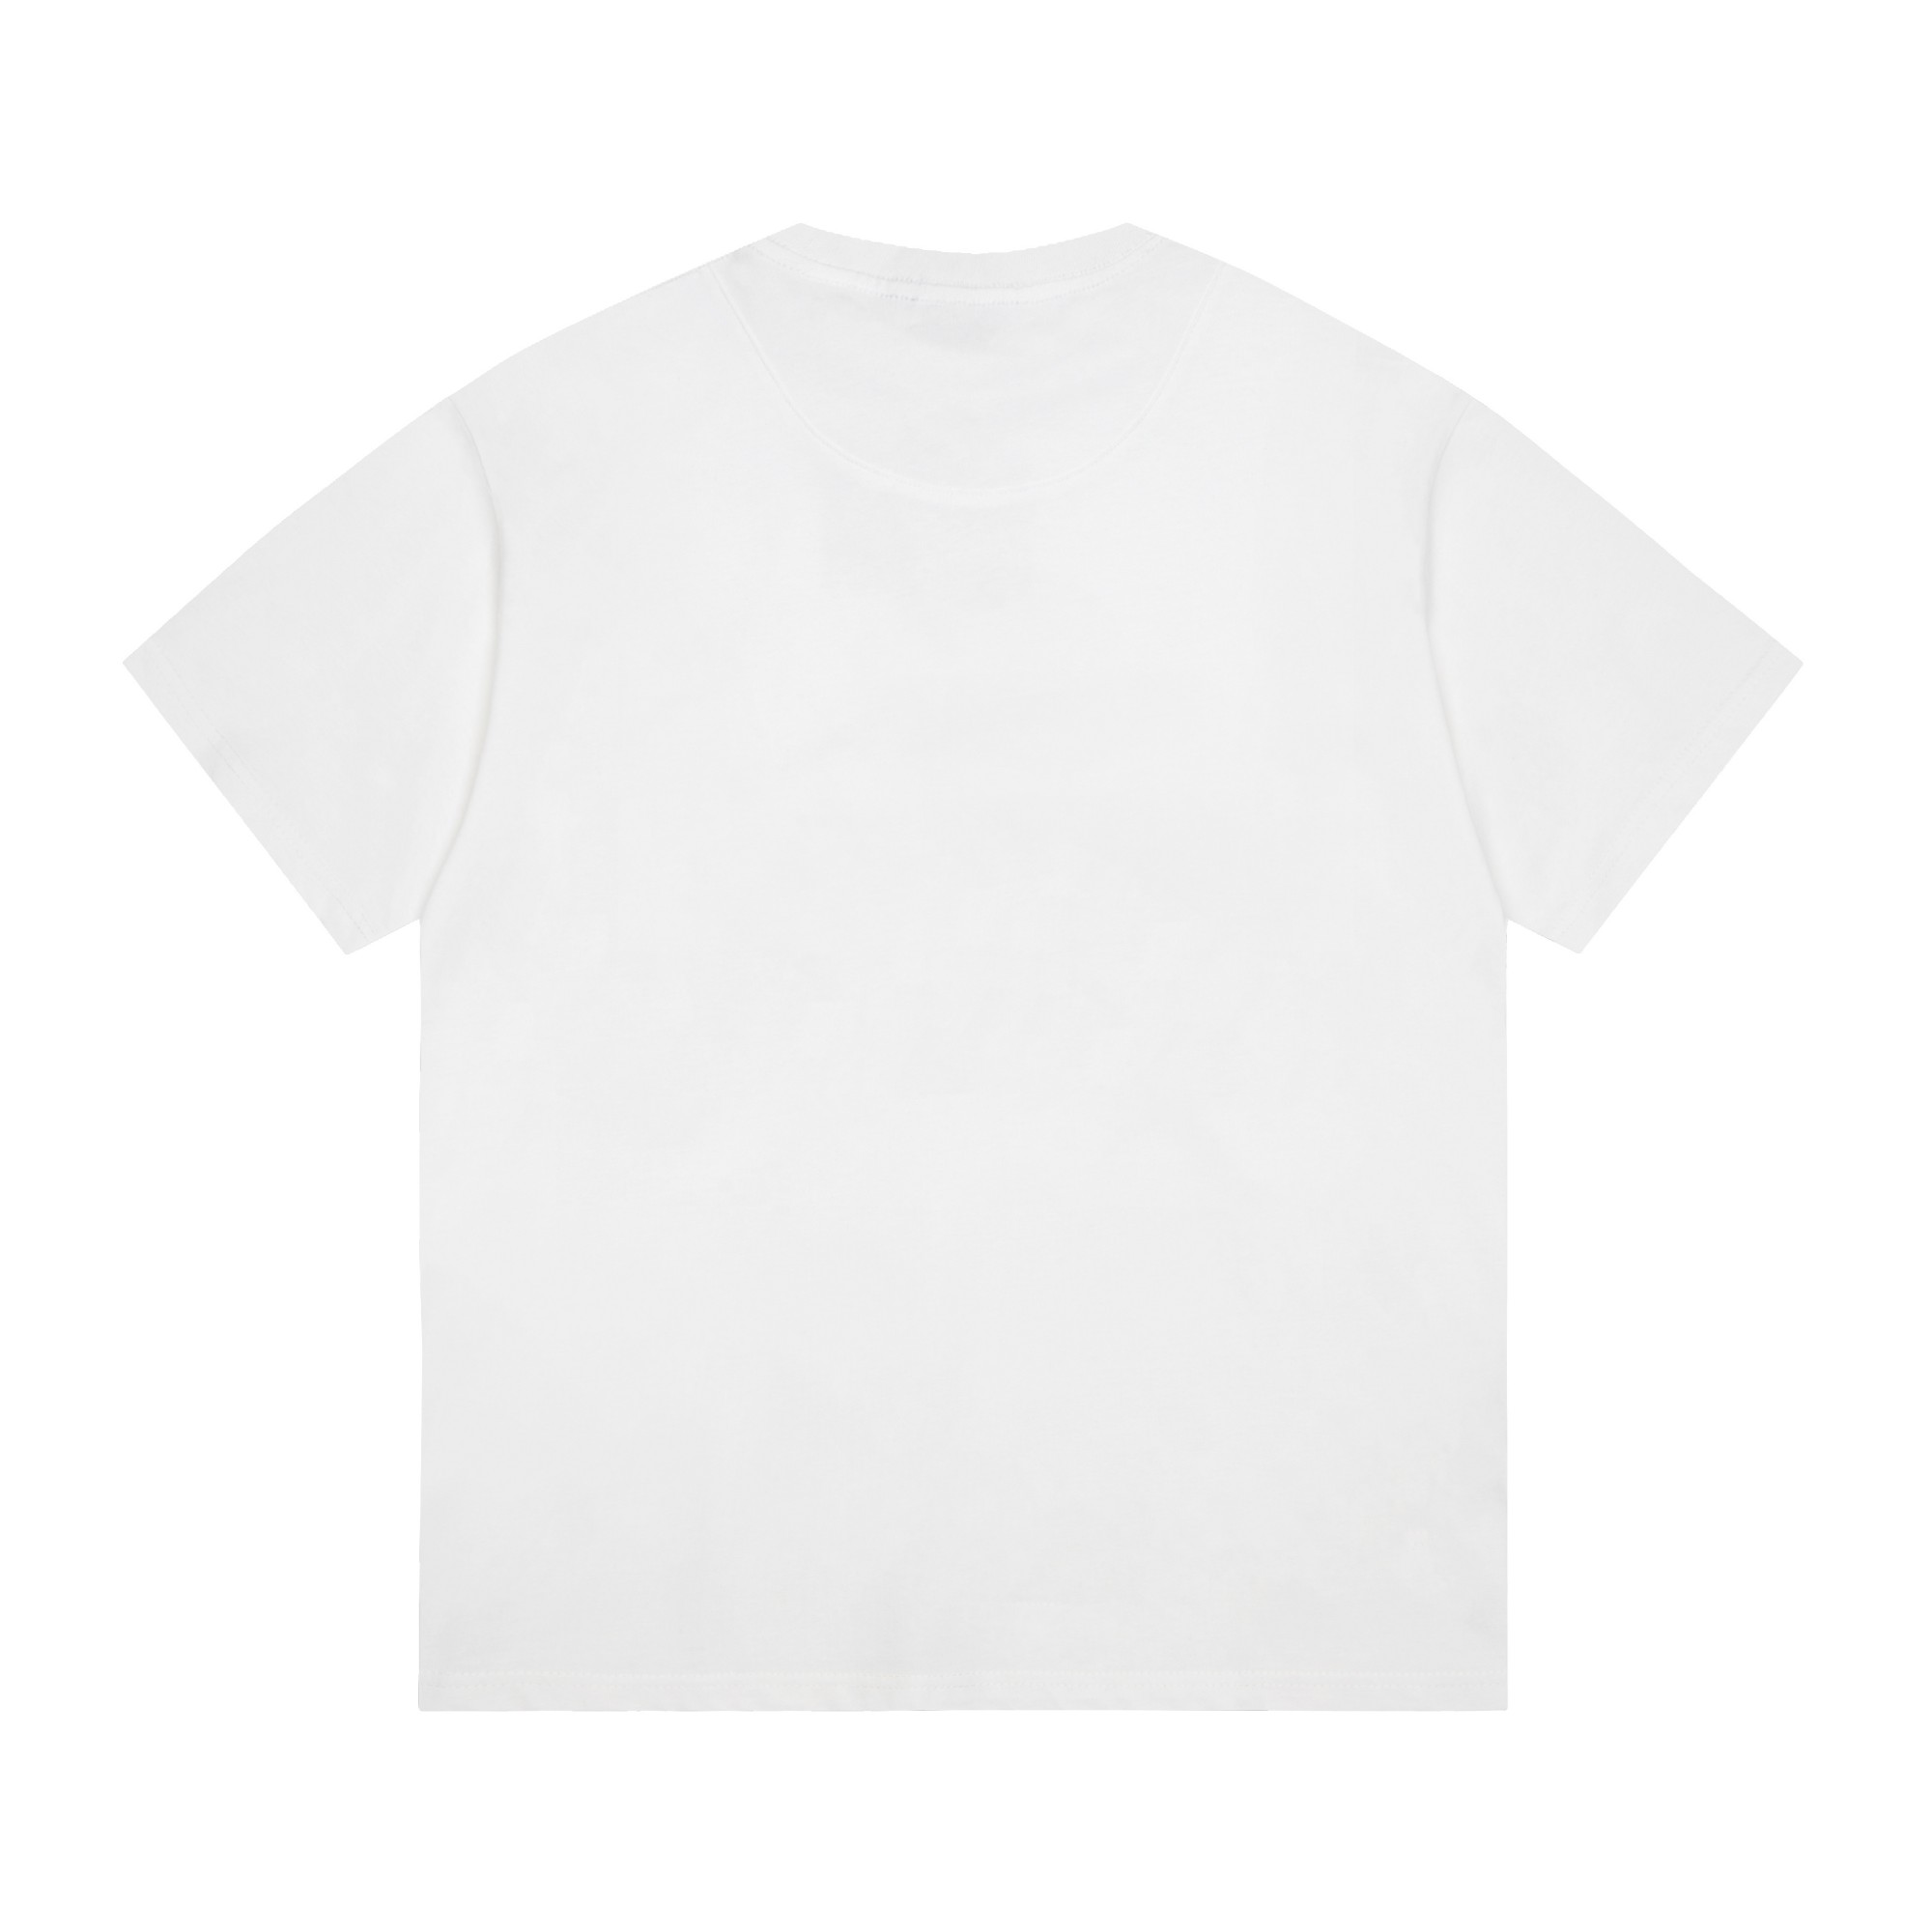 驚きの破格値人気のバレンシアガ tシャツ サイズ感n級品 柔らかいコットン生地 モード感_2